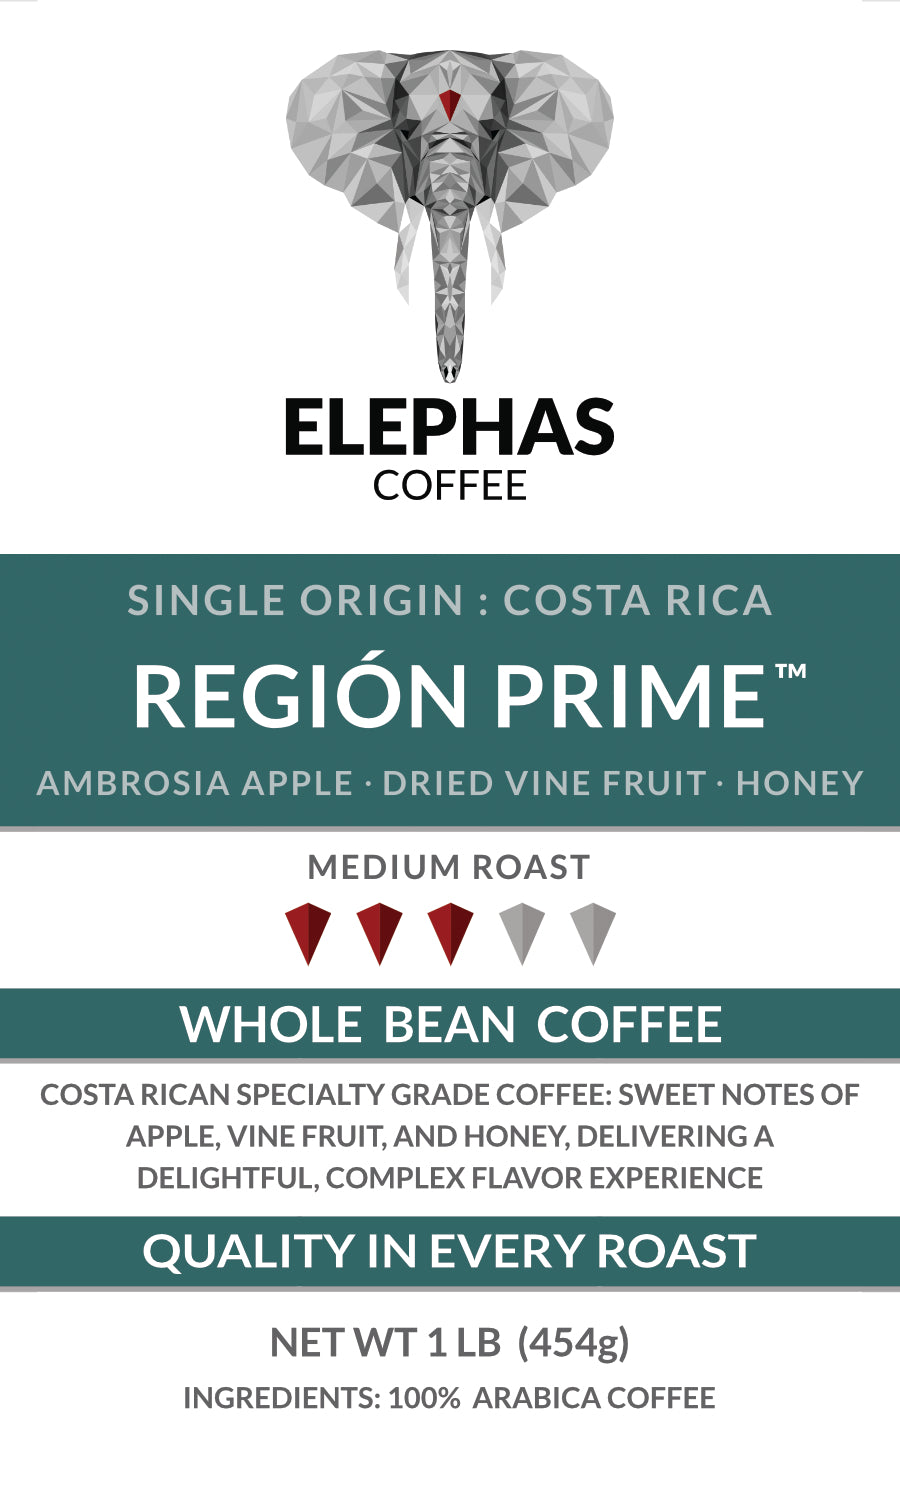 REGION PRIME Costa Rica Single Origin Coffee